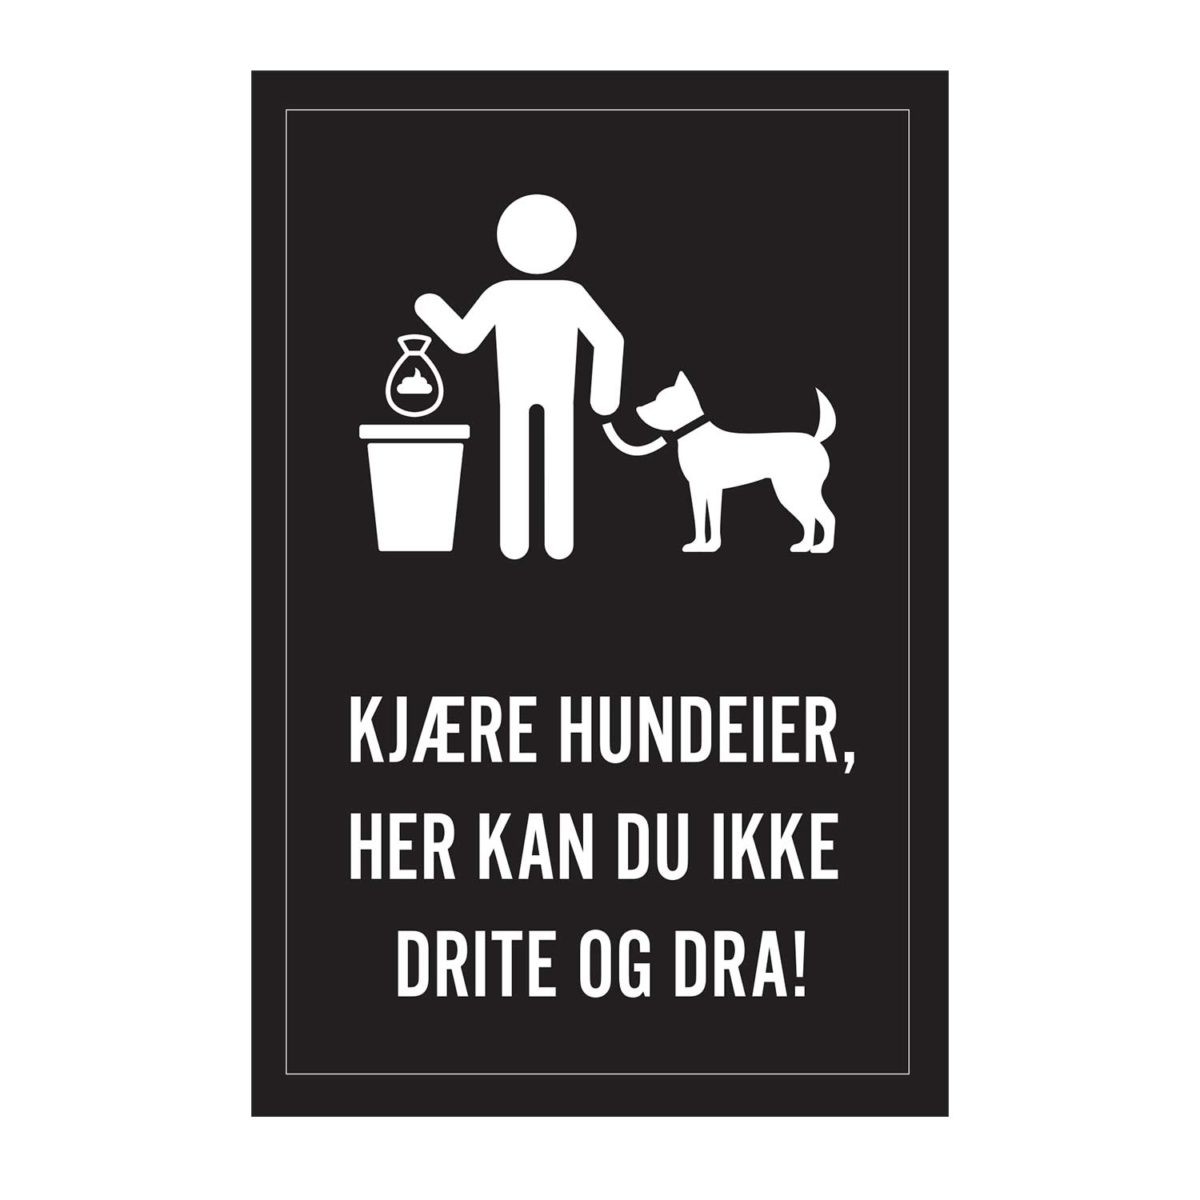 Sort skilt med hvit illustrasjon og tekst "Kjære hundeeier, her kan du ikke drite og dra!"